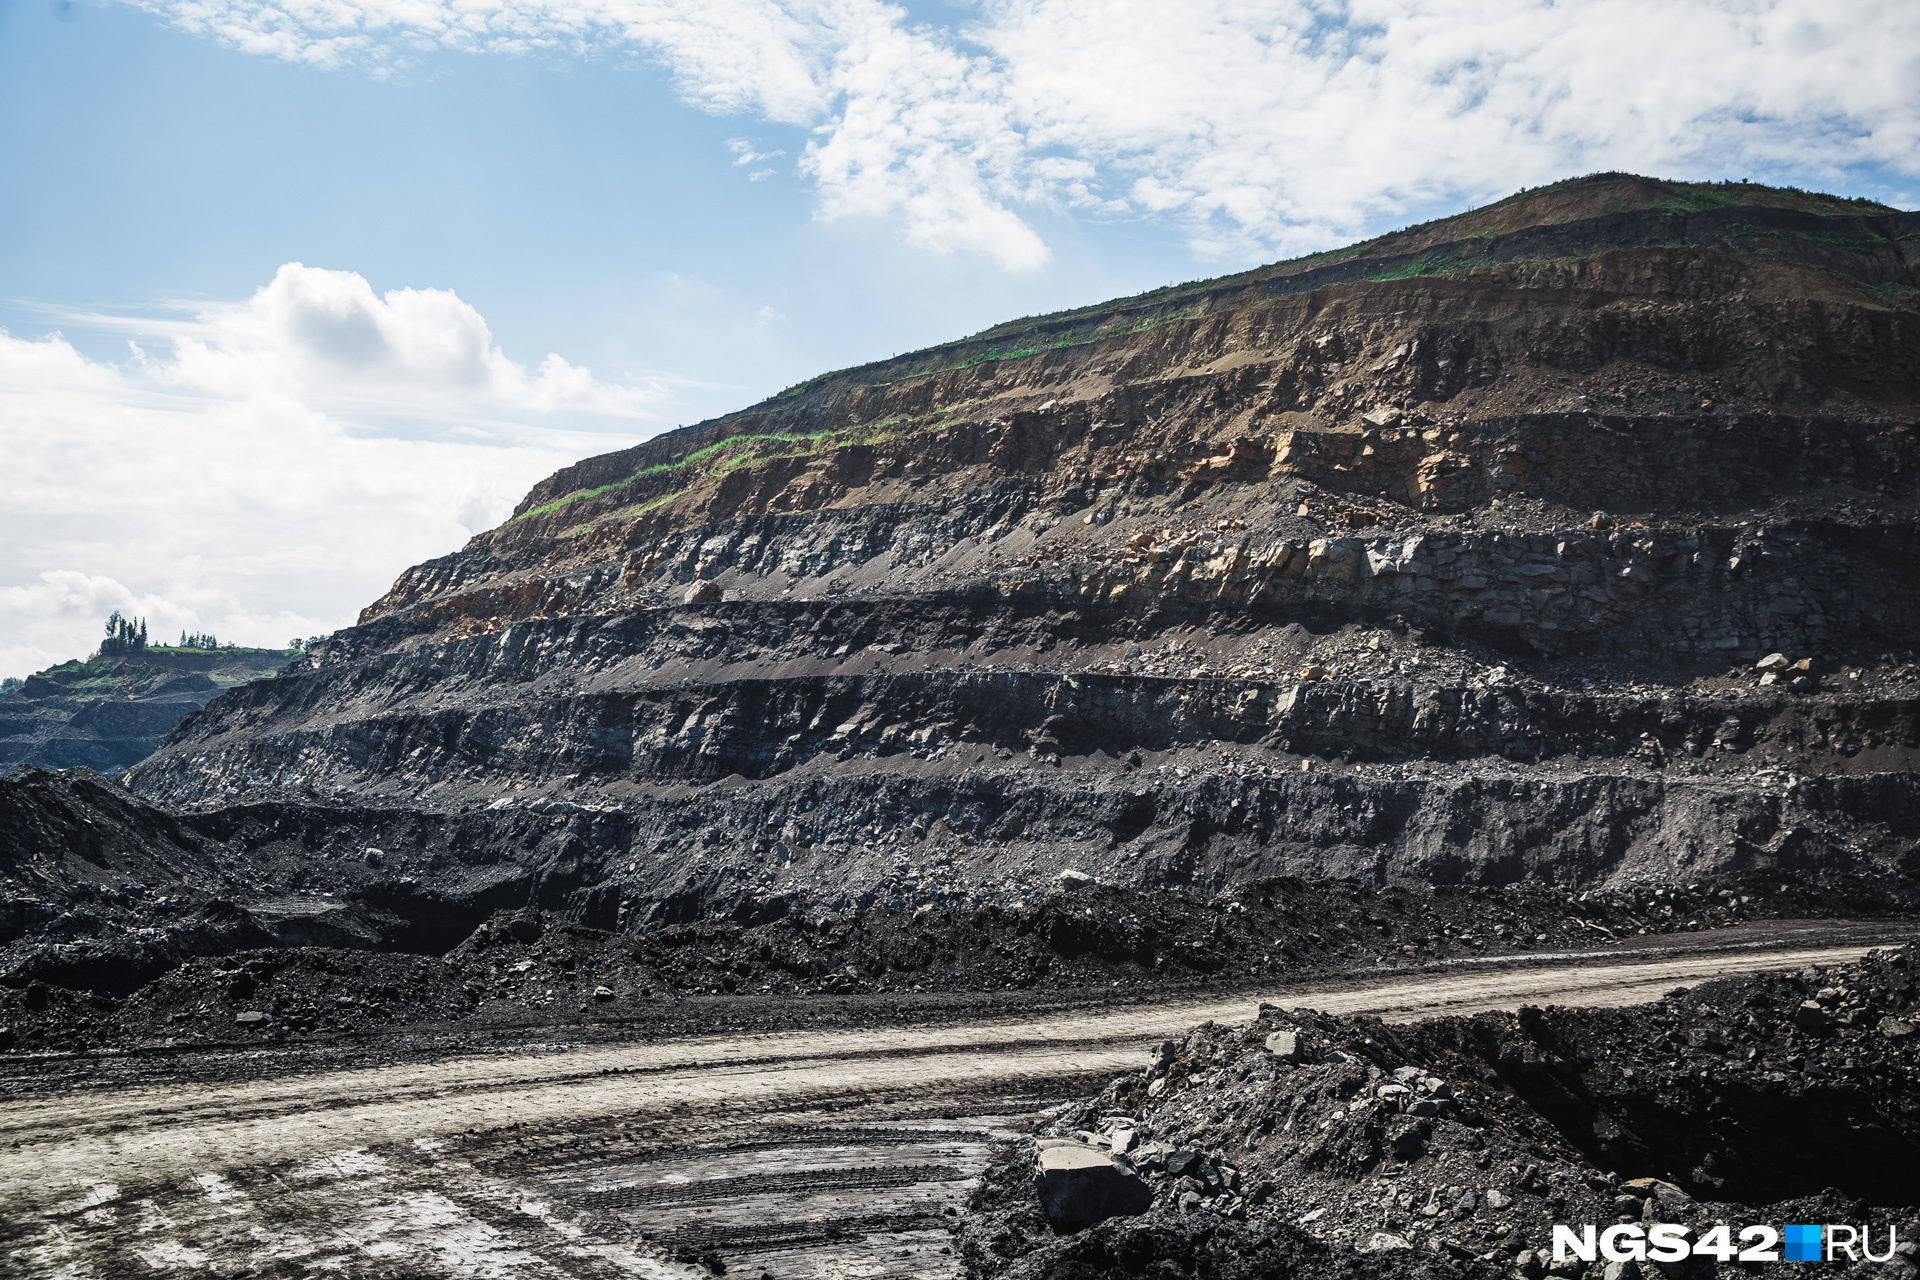 Компания СУЭК, занимающаяся добычей угля в Забайкалье, попала под санкции США